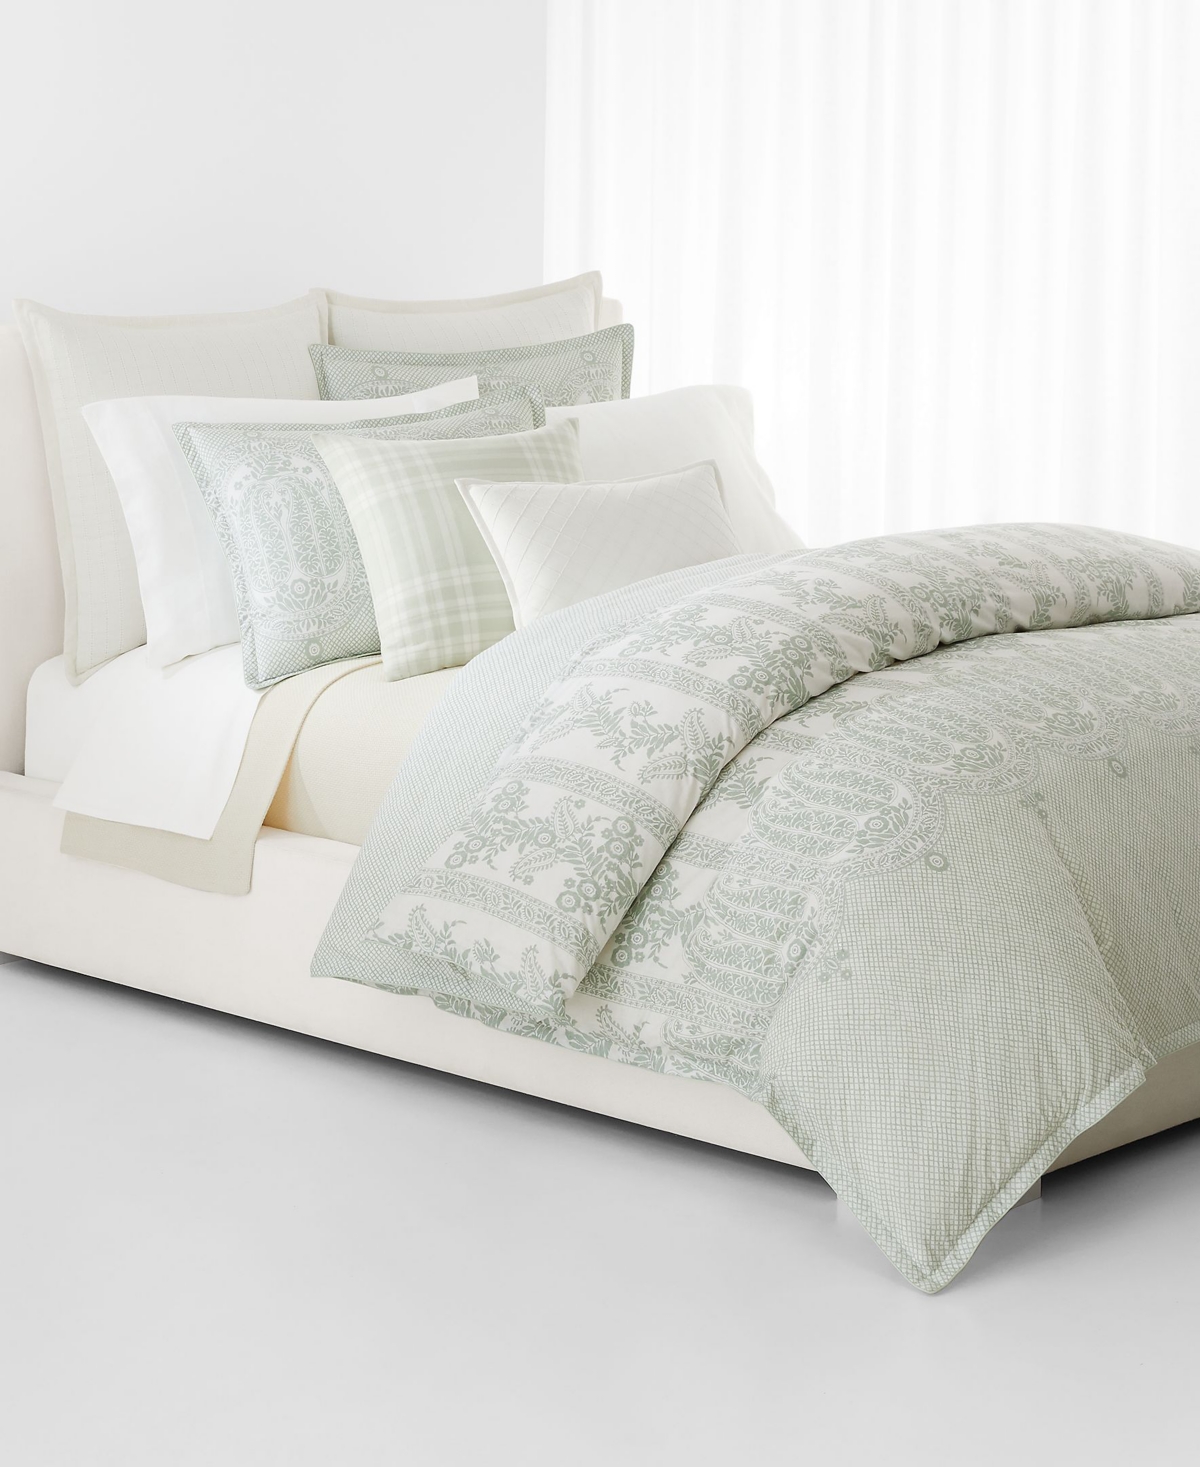 Lauren Ralph Lauren Wakefield 3 Piece Comforter Set, Full/queen Bedding In Green